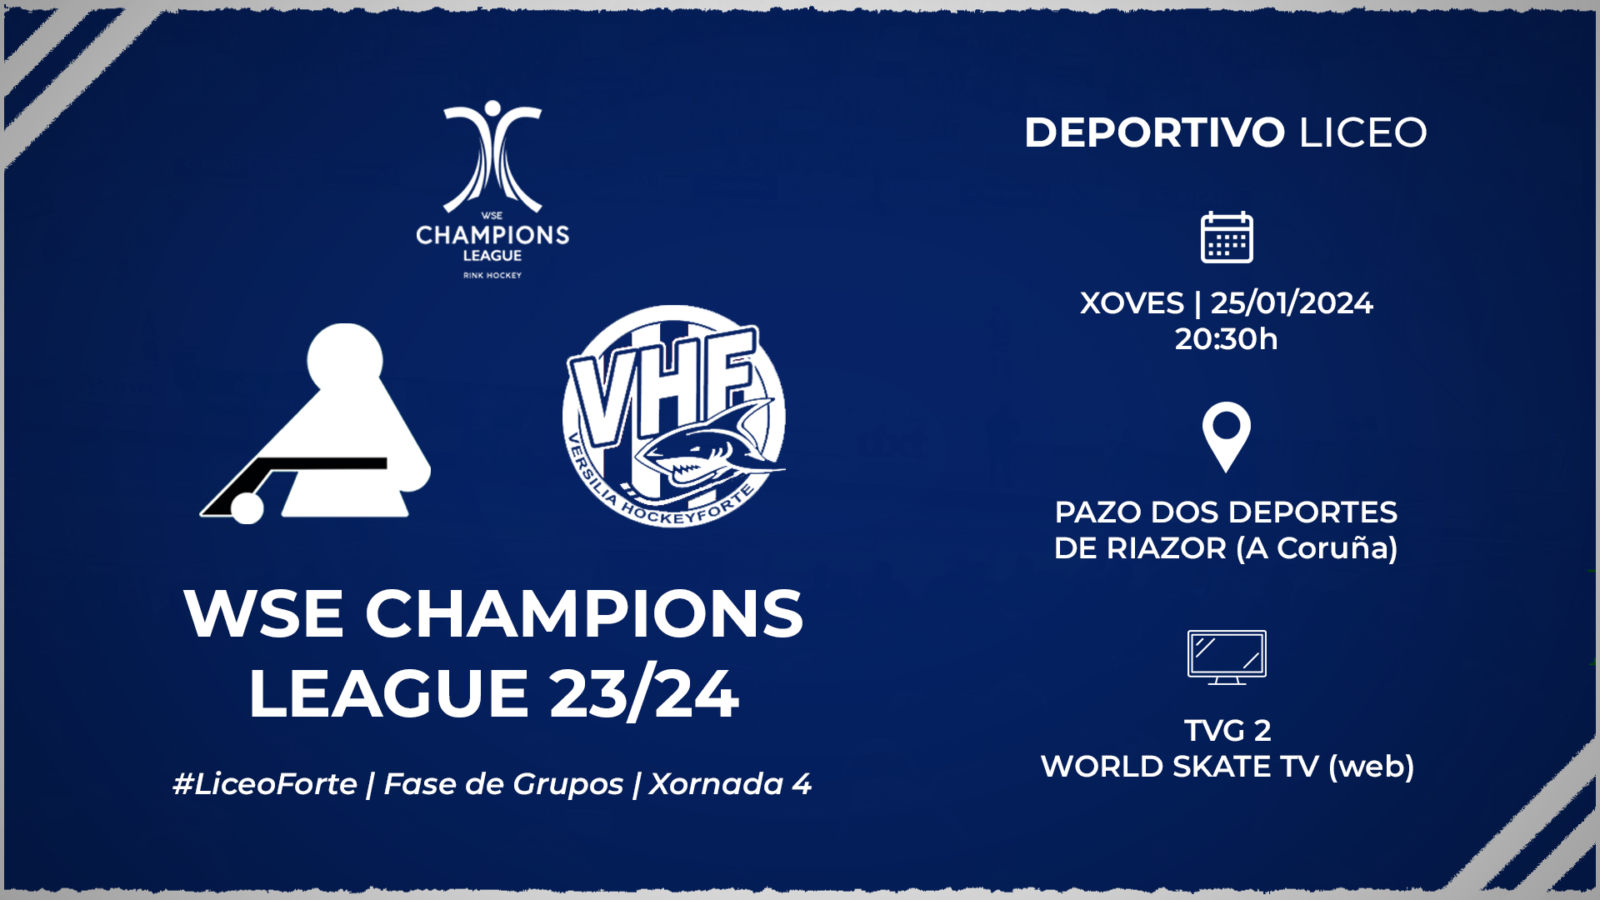 #LiceoForte | ENTRADAS para la jornada 4 de la WSE Champions League 23/24